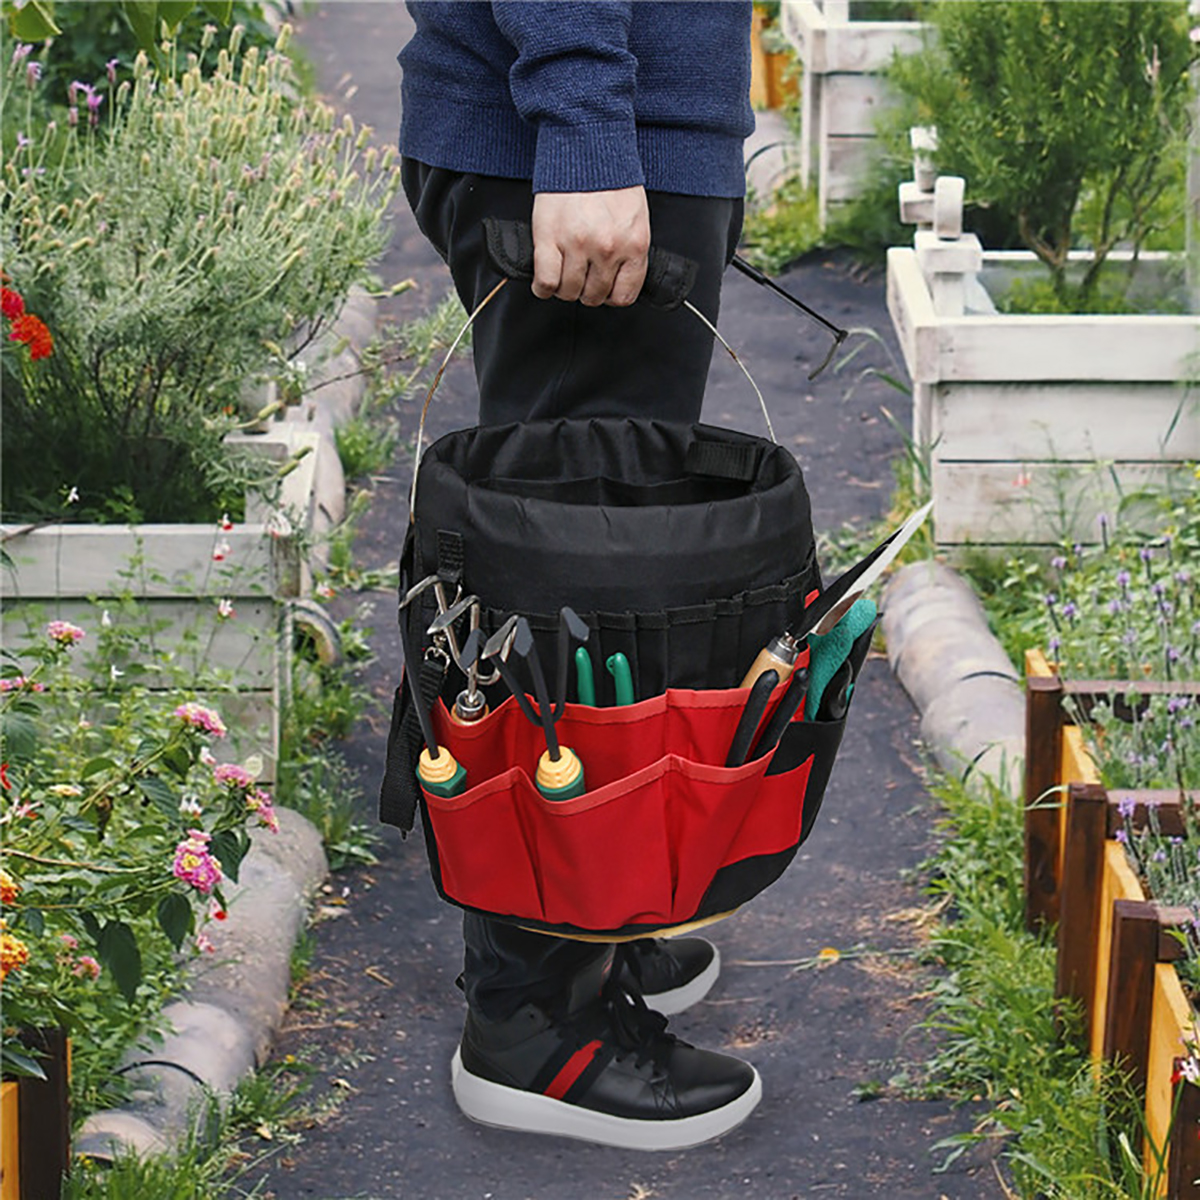 42-Storage-Pockets-Garden-Work-Tool-Bag-For-5-Gallon-Bucket-Organizer-Holder-1680249-2